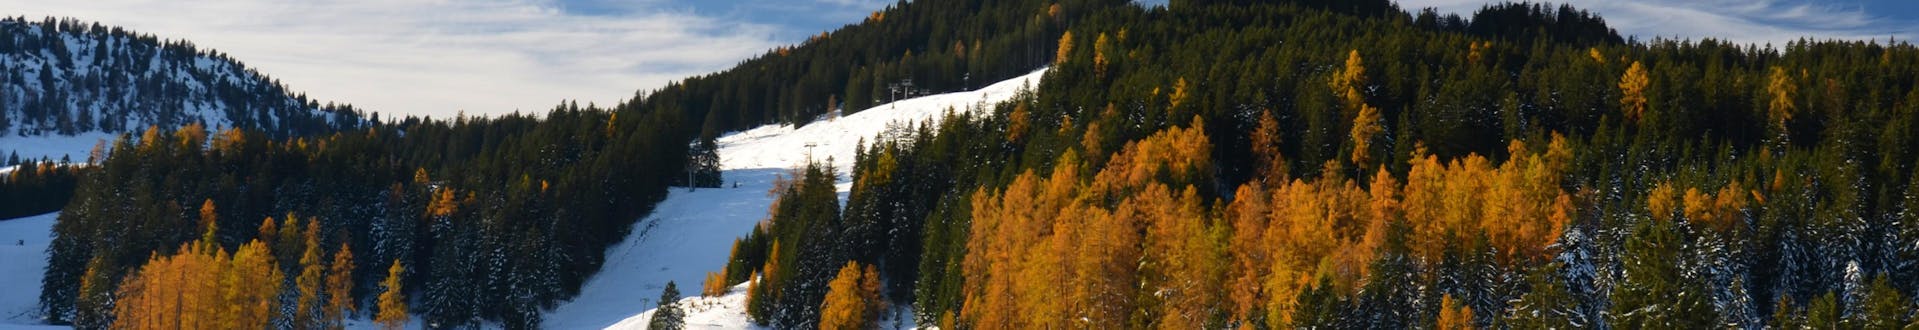 De skipistes van Brand - Brandnertal skigebied, waar u online skilessen kunt boeken.